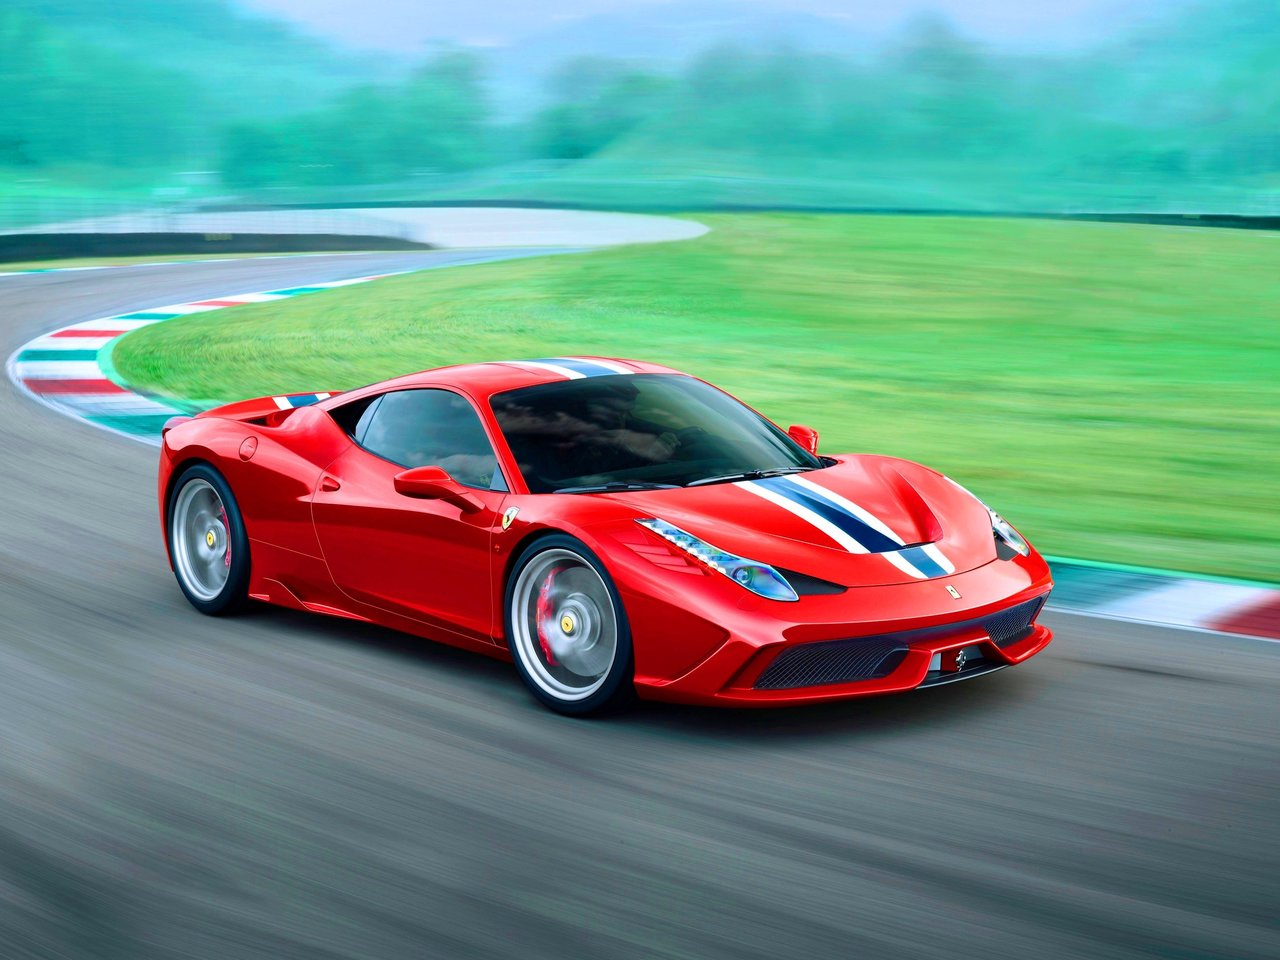 Расход газа одной комплектации купе Speciale Ferrari 458. Разница стоимости заправки газом и бензином. Автономный пробег до и после установки ГБО.